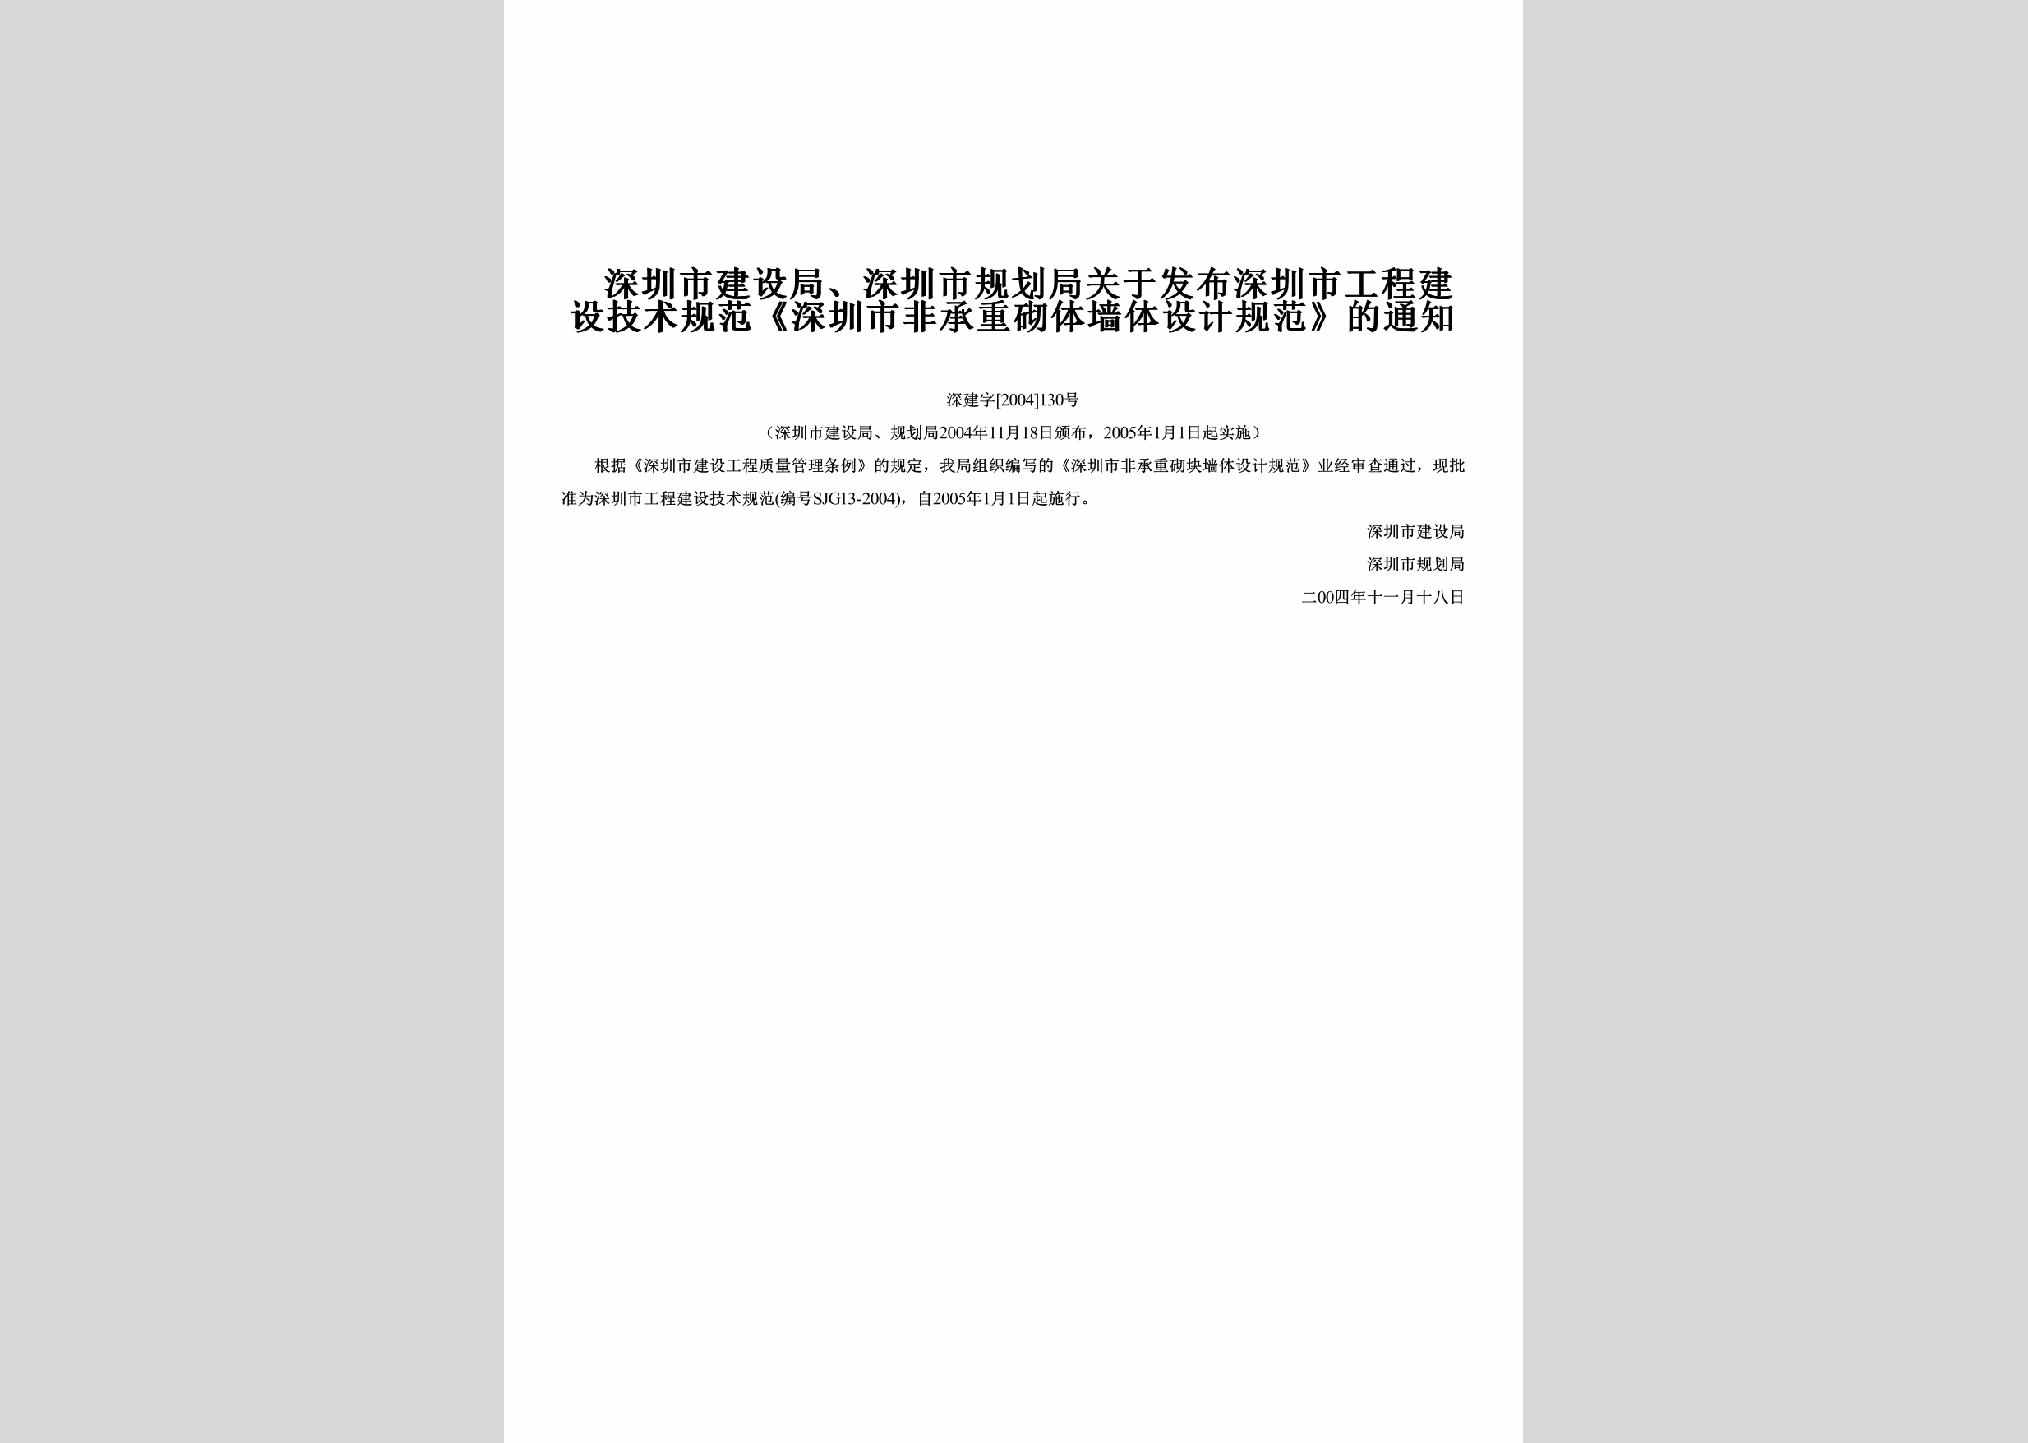 深建字[2004]130号：关于发布深圳市工程建设技术规范《深圳市非承重砌体墙体设计规范》的通知